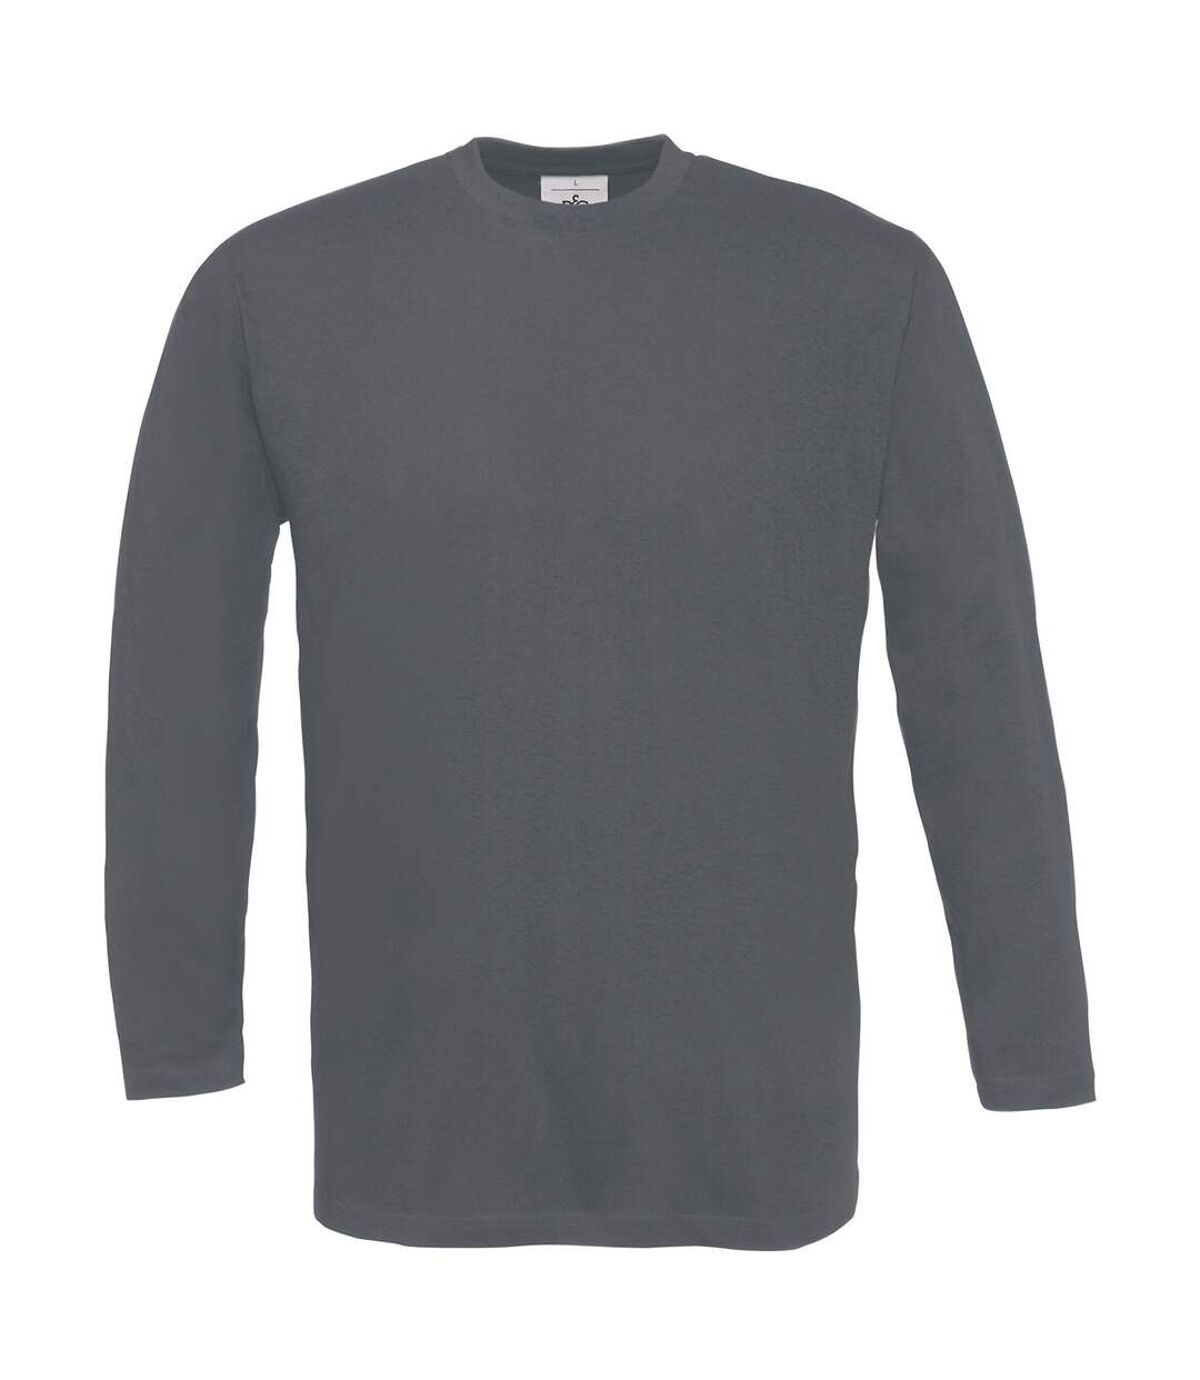 T-shirt manches longues homme - col rond - E190LSL - gris foncé